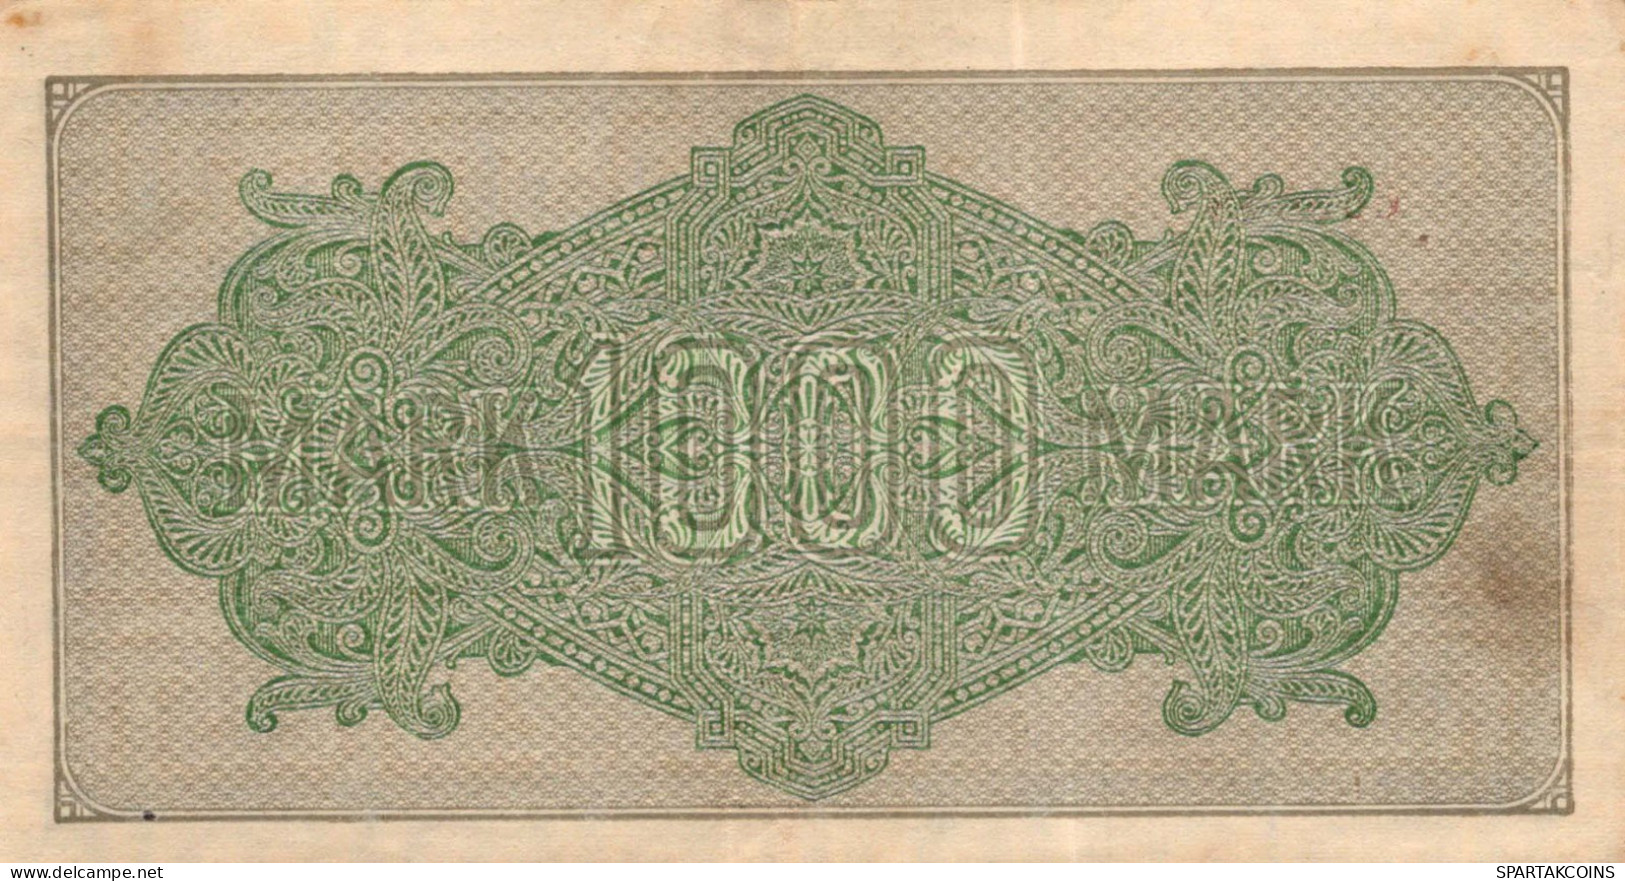 1000 MARK 1922 Stadt BERLIN DEUTSCHLAND Papiergeld Banknote #PL390 - [11] Emissions Locales